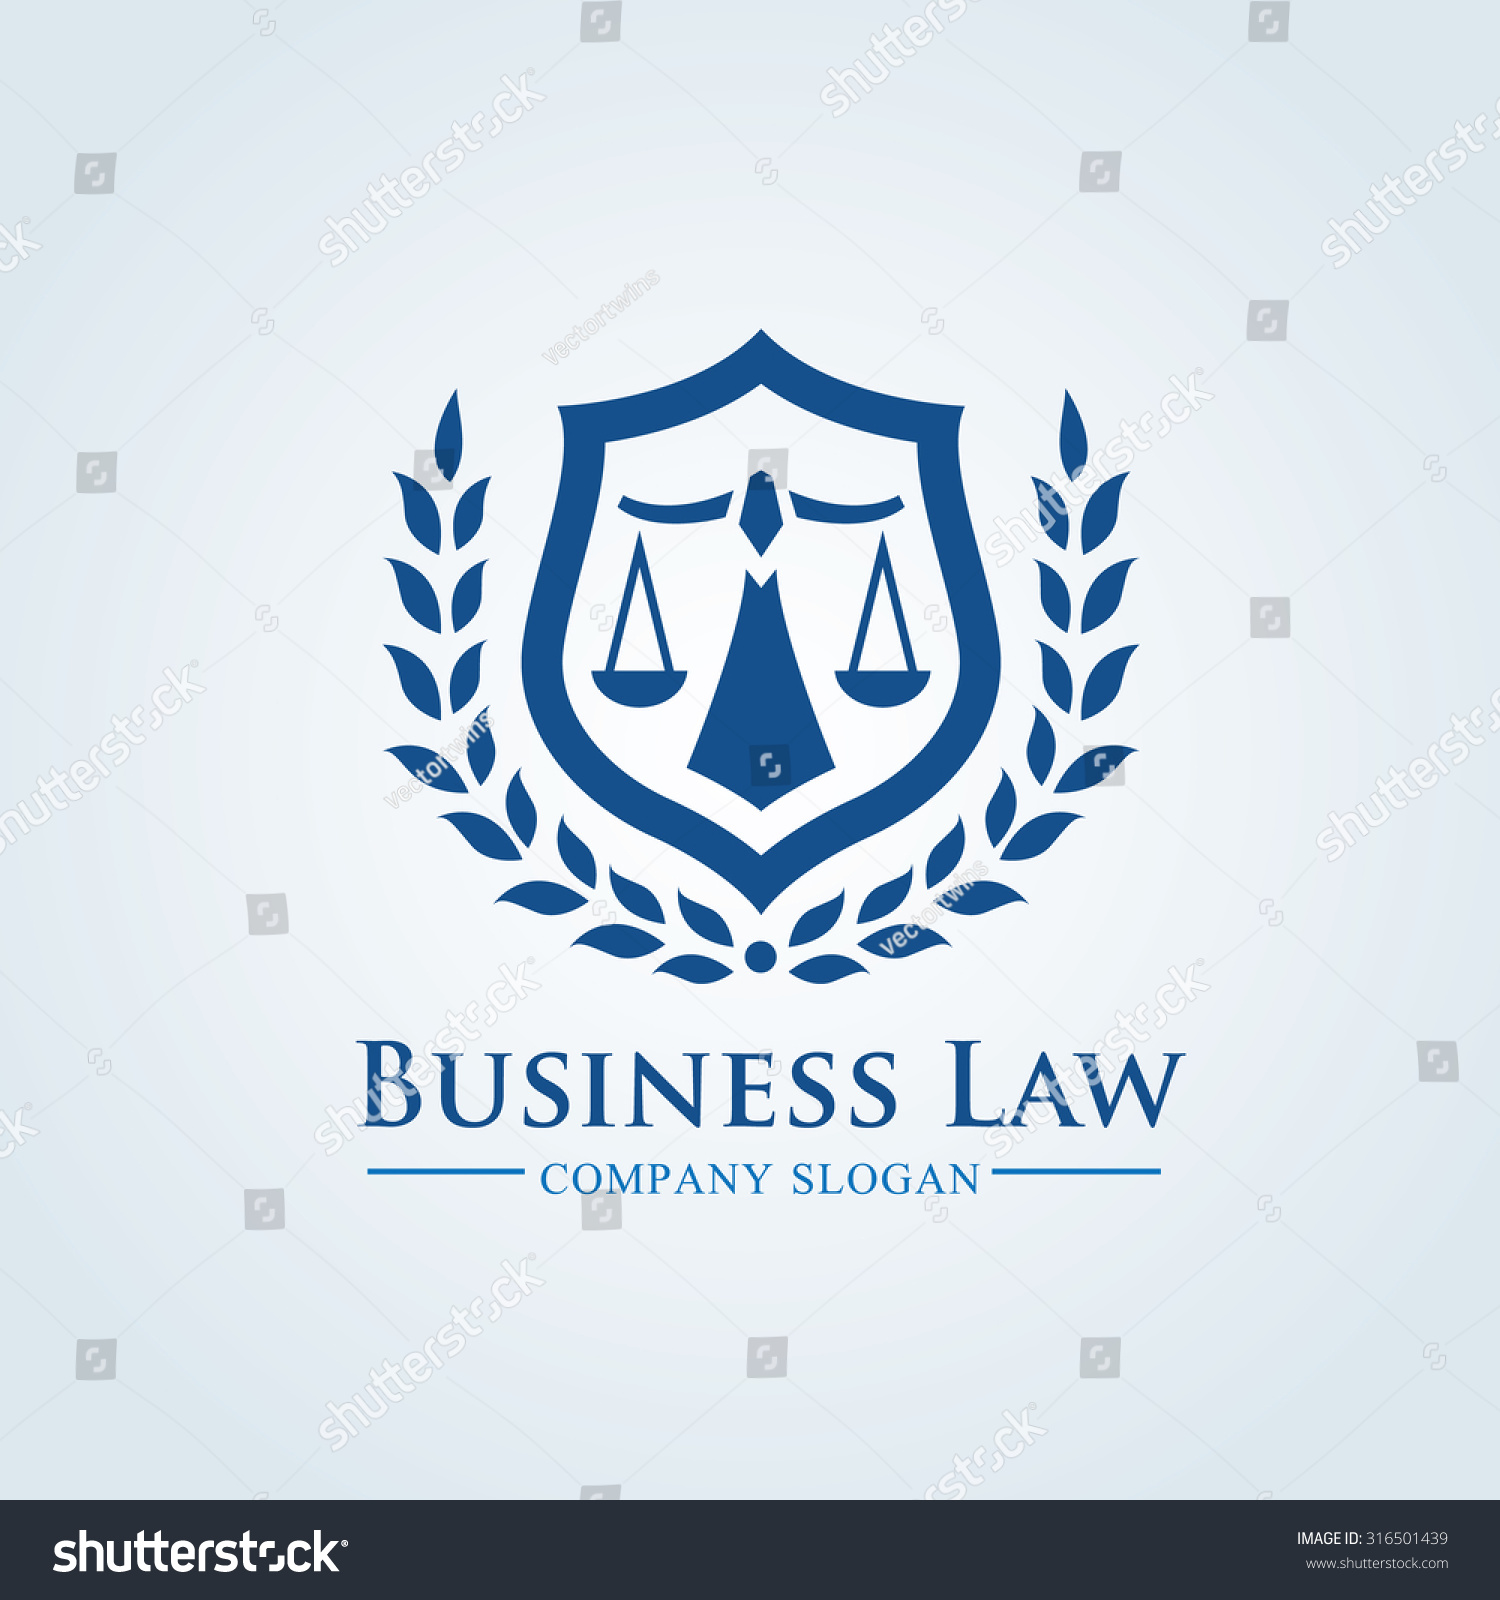 business law clip art - photo #30